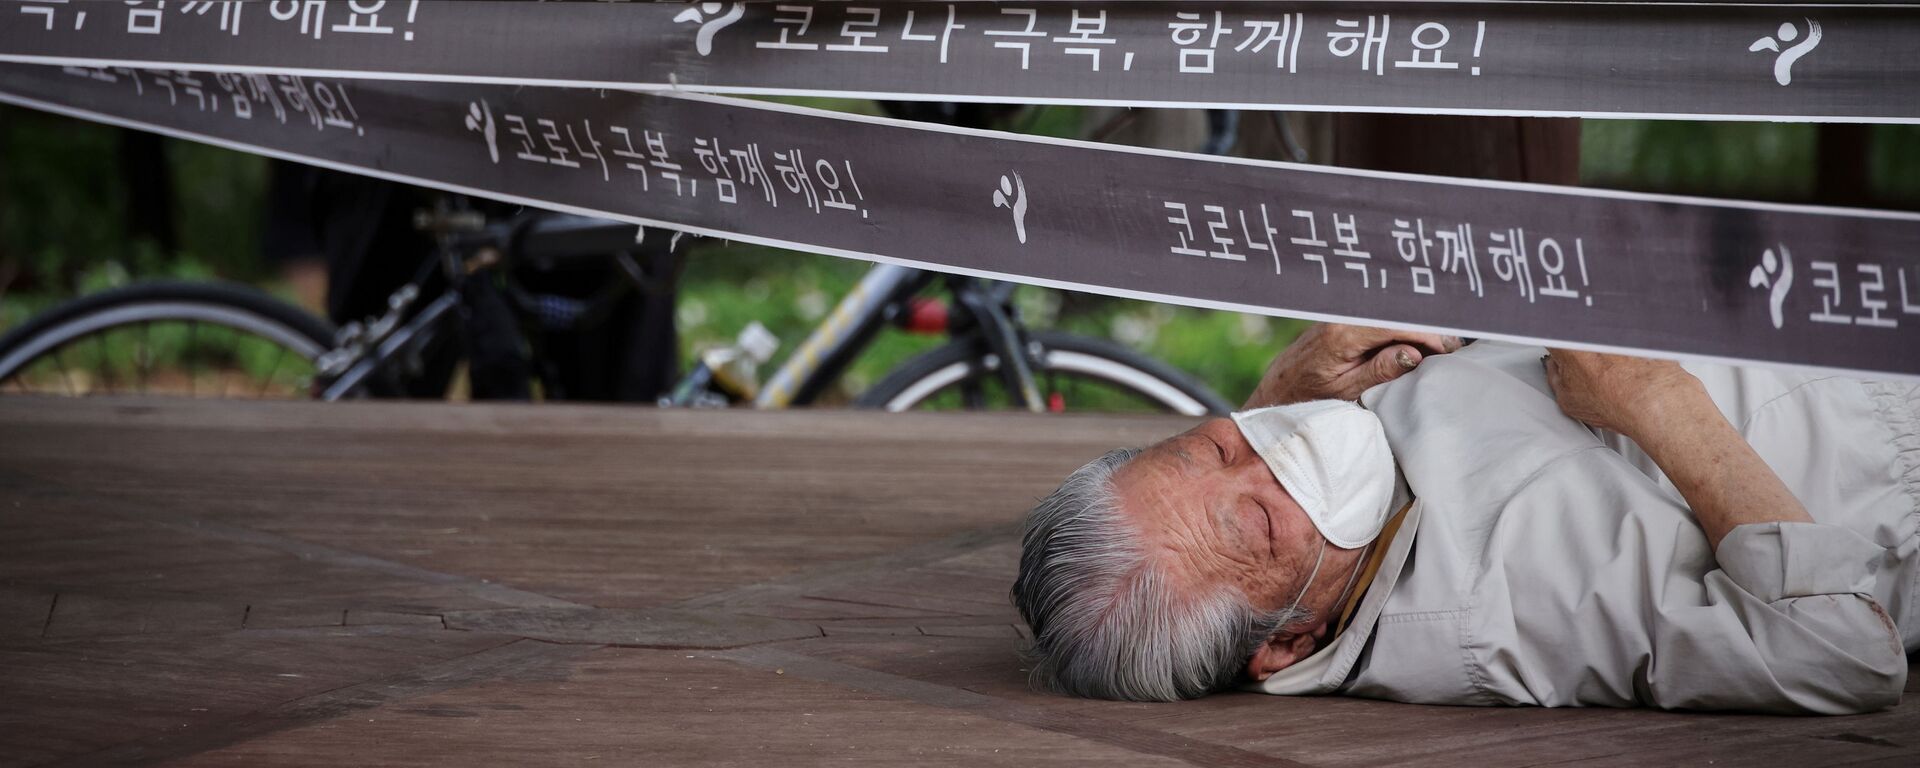 رجل يستريح في جناح تم تطويقه كإجراء لتجنب انتشار مرض فيروس كورونا (كوفيد-19) في حديقة في سيؤل، كوريا الجنوبية، 27 سبتمبر 2021. - سبوتنيك عربي, 1920, 26.11.2021